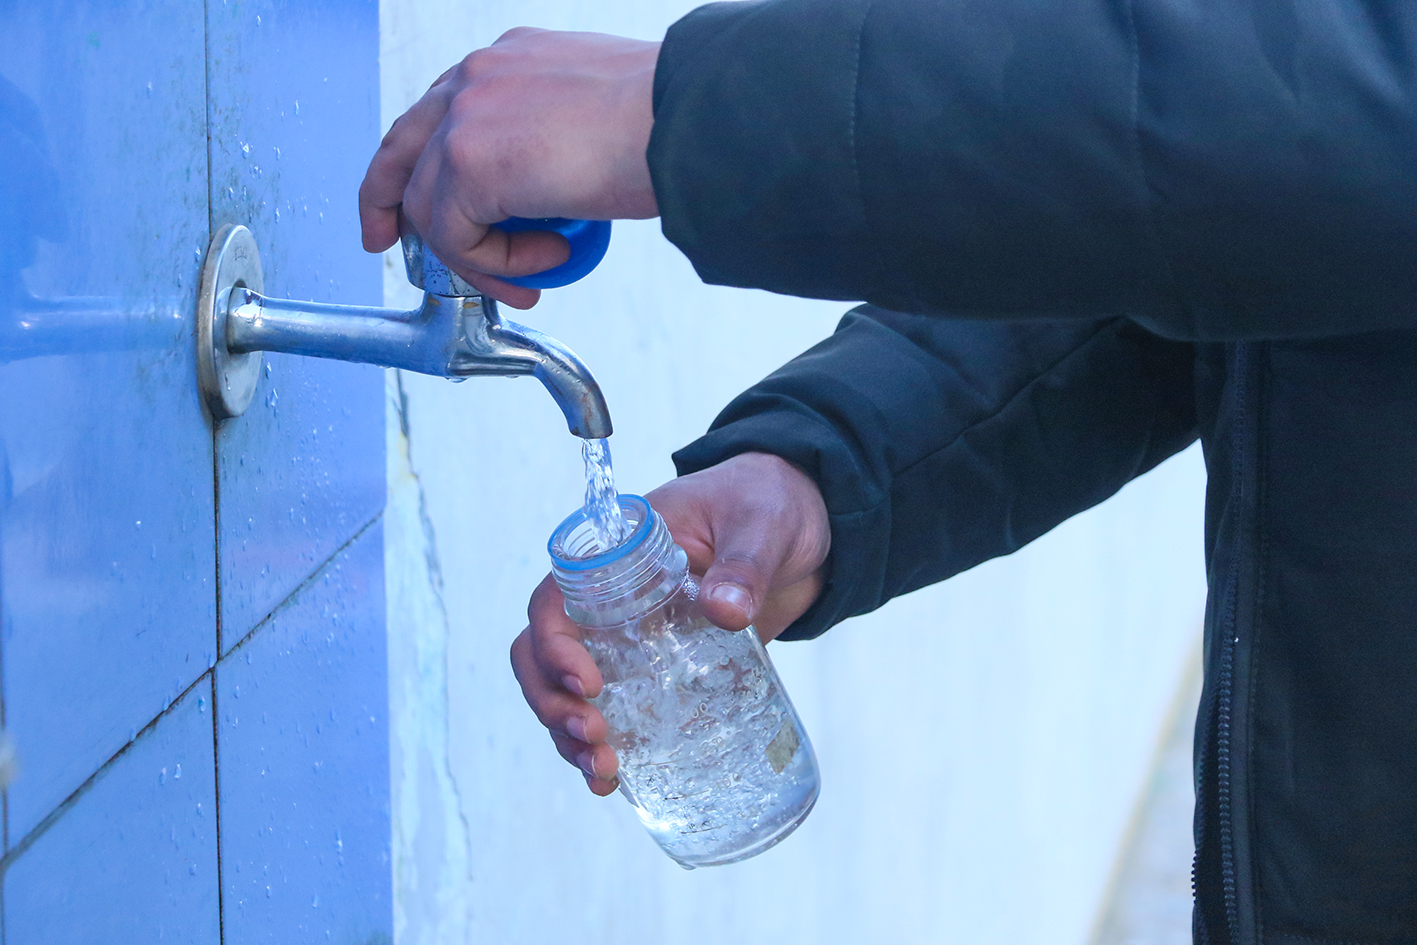 جولة تفتيشية على المدارس والمؤسسات التعليمية لفحص مياه الشرب